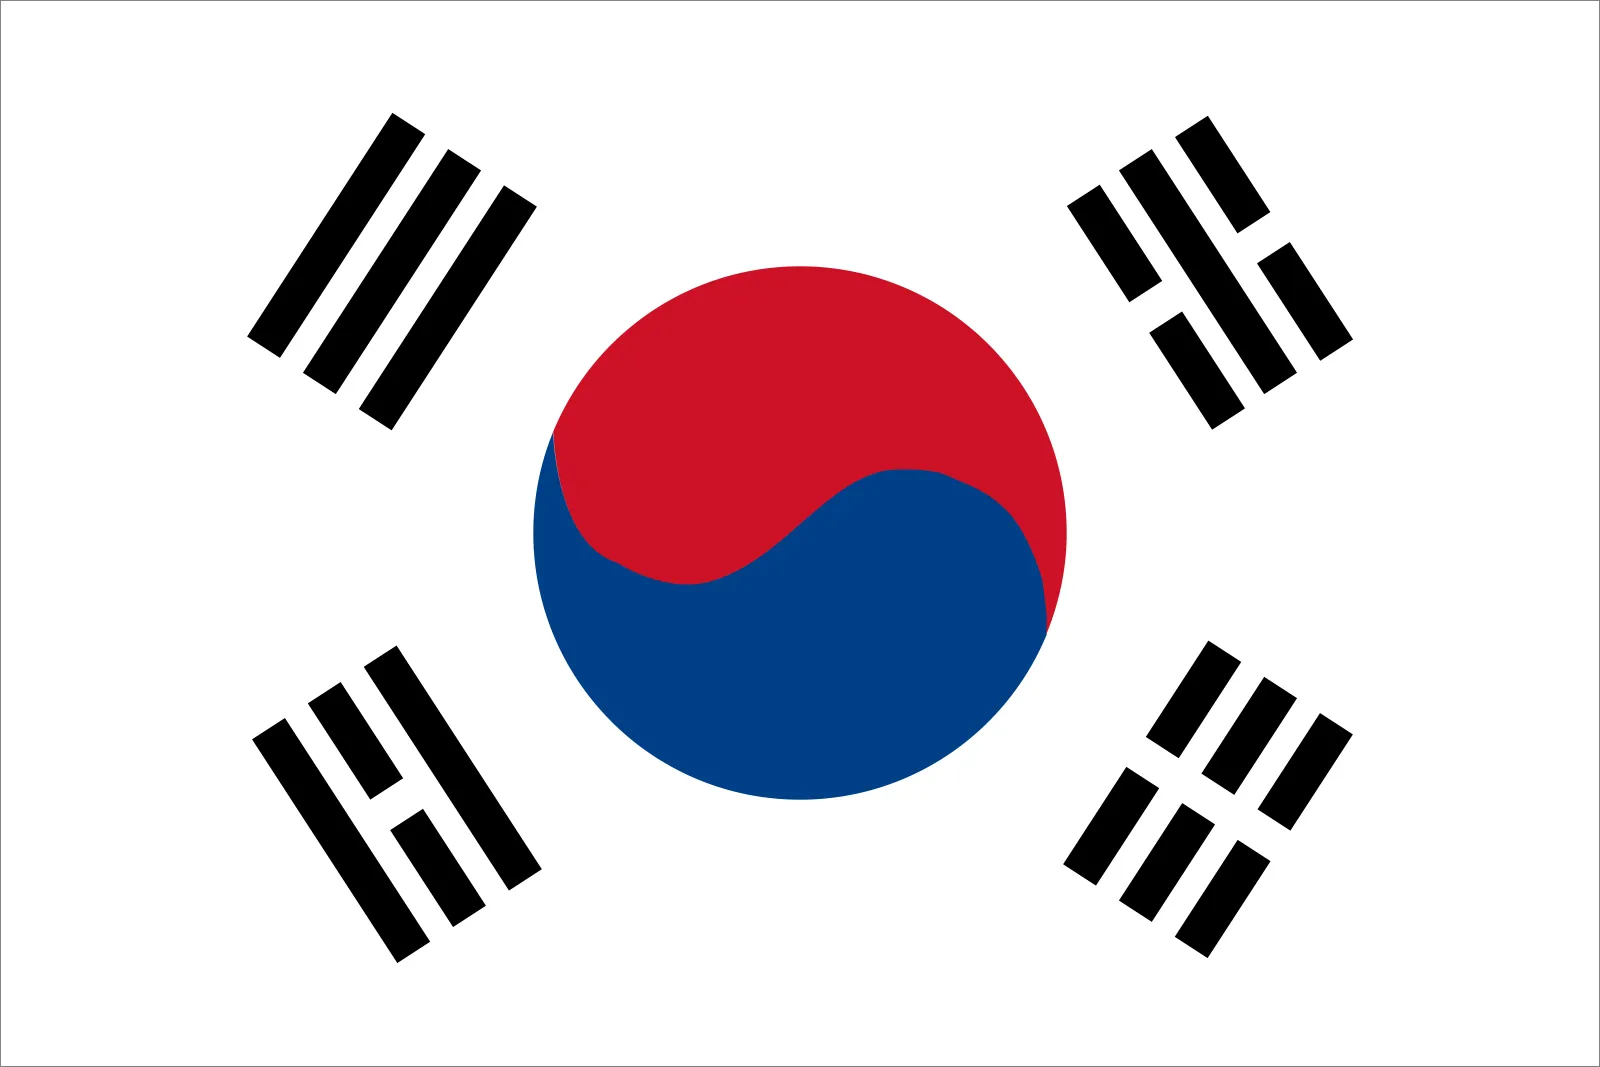 दक्षिण कोरियाको आइसीटी निर्यात मार्चमा पनि वृद्धि